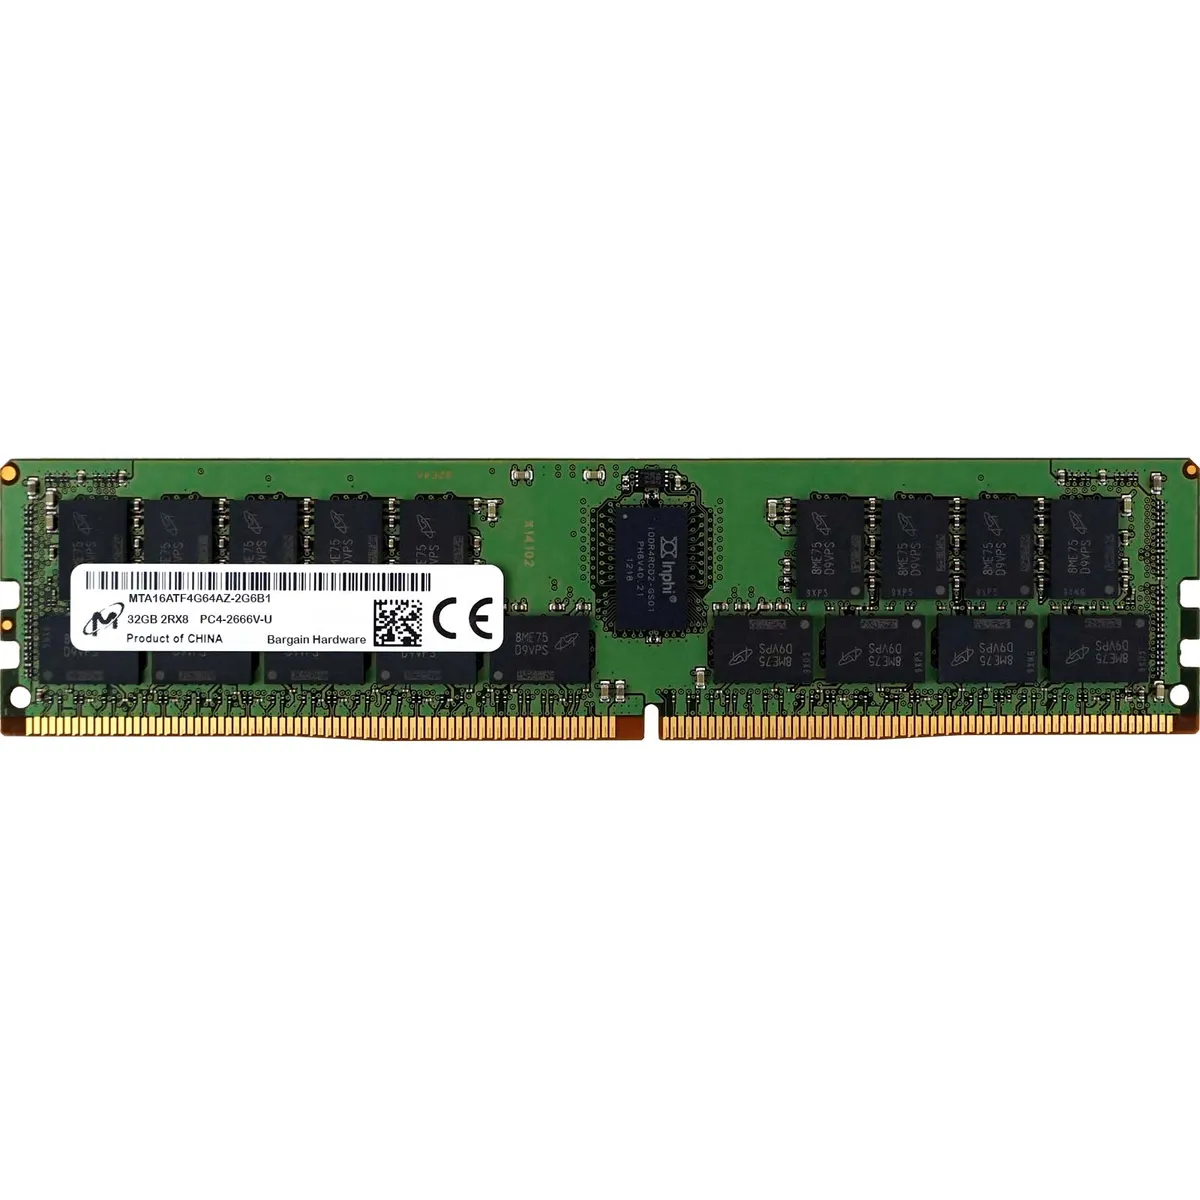 Micron (MTA16ATF4G64AZ-2G6B1) - 32GB PC4-21300V-U (2RX8, DDR4-2666MHz) RAM